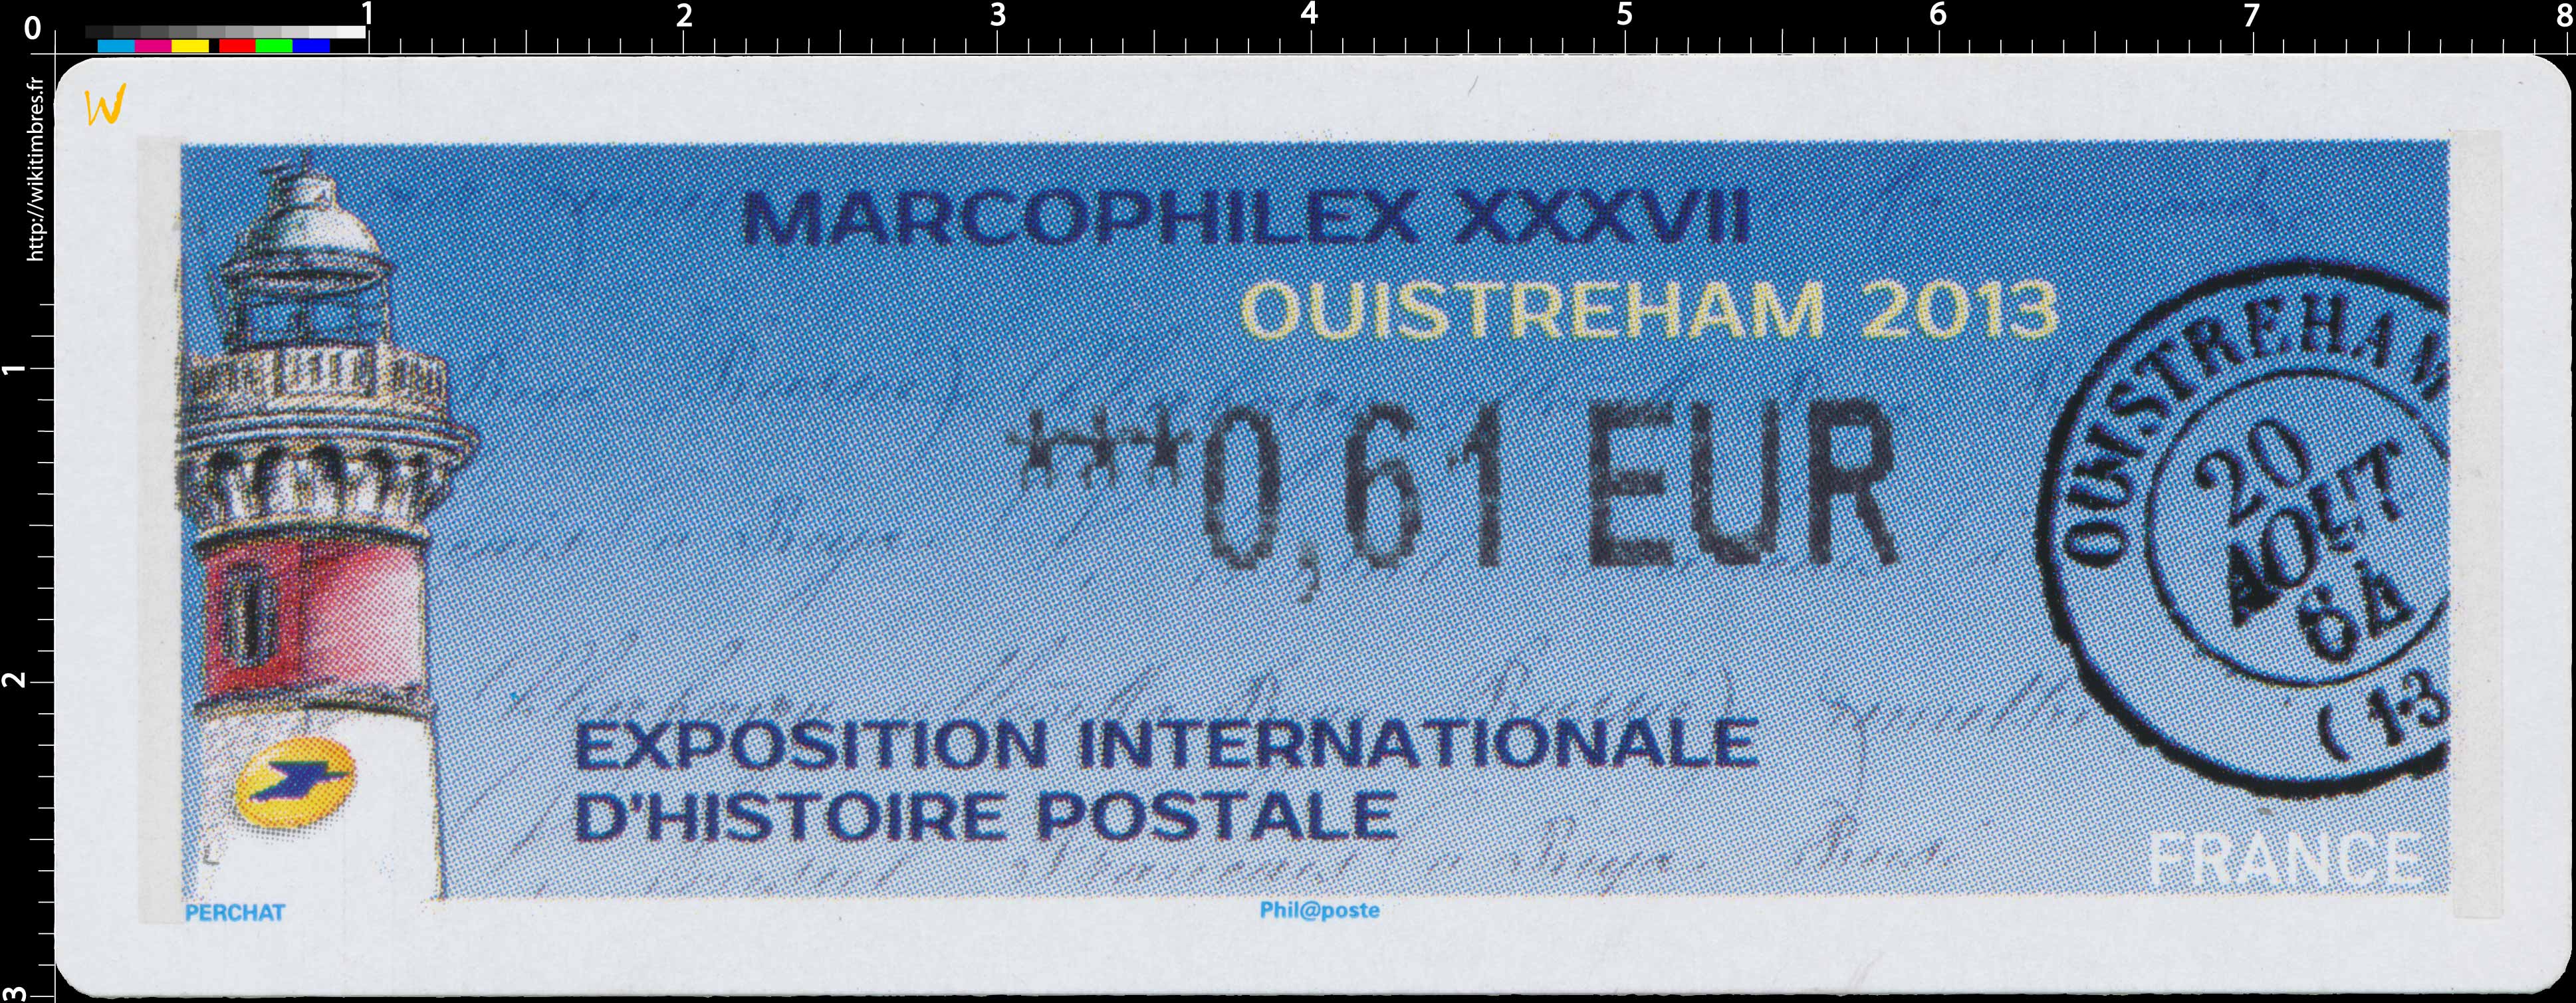 2013 LISA Marcophilex XXXVII à Ouistreham exposition internationale d'histoire postale